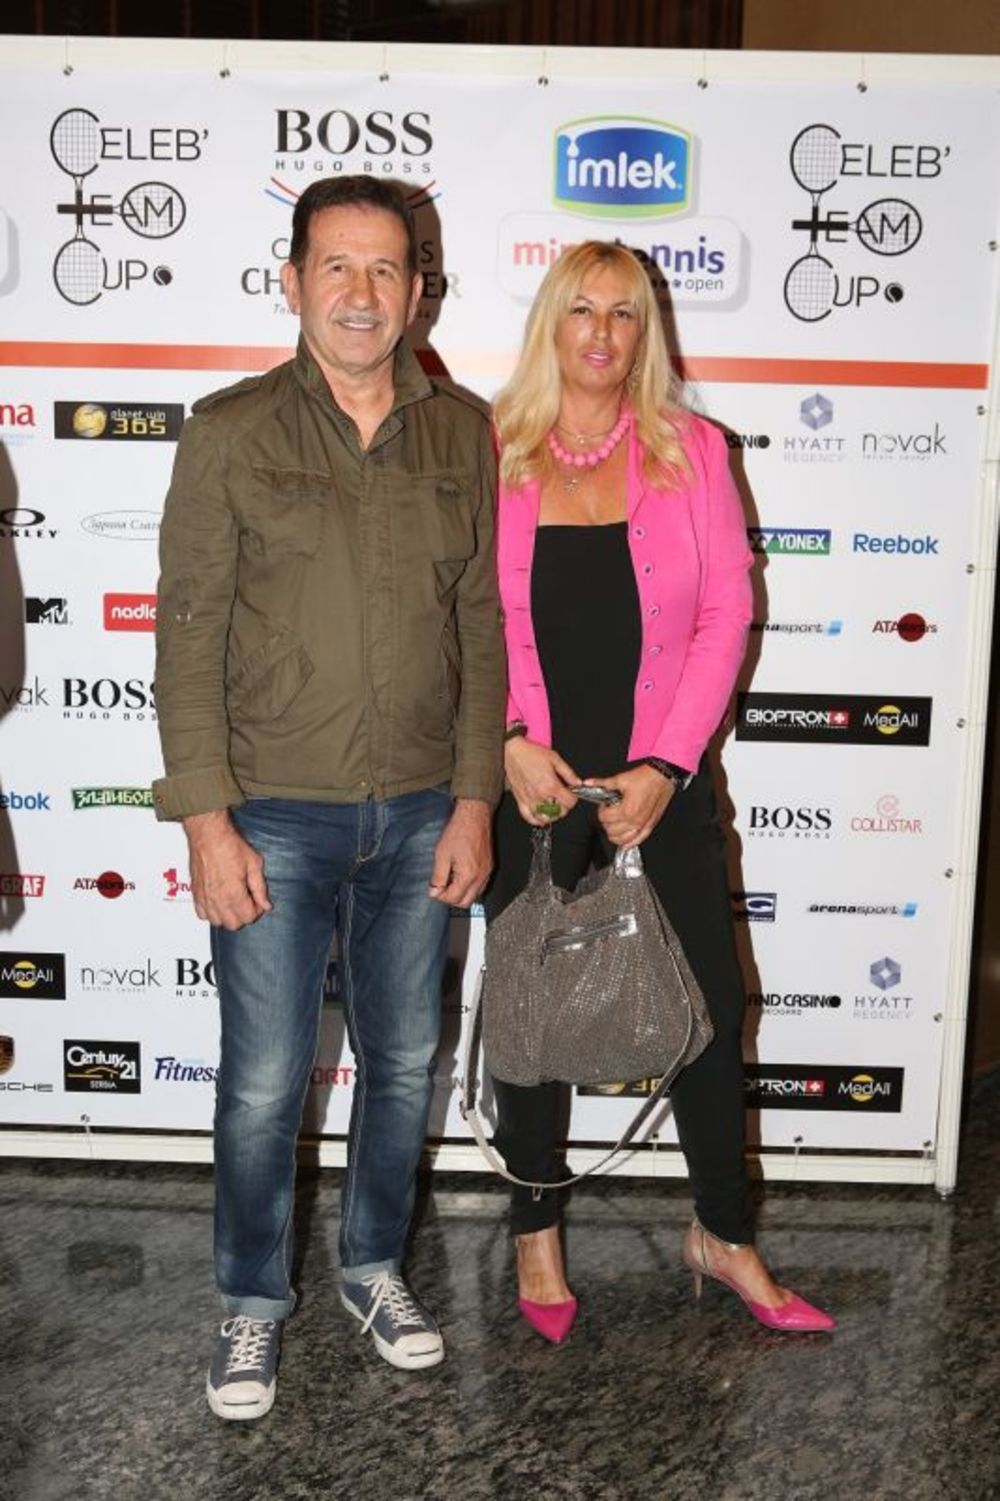 Grand Casino Beograd sinoć je ugostio brojne goste na zabavi povodom prezentacije programa i konačnog žreba teniskog turnira poznatih